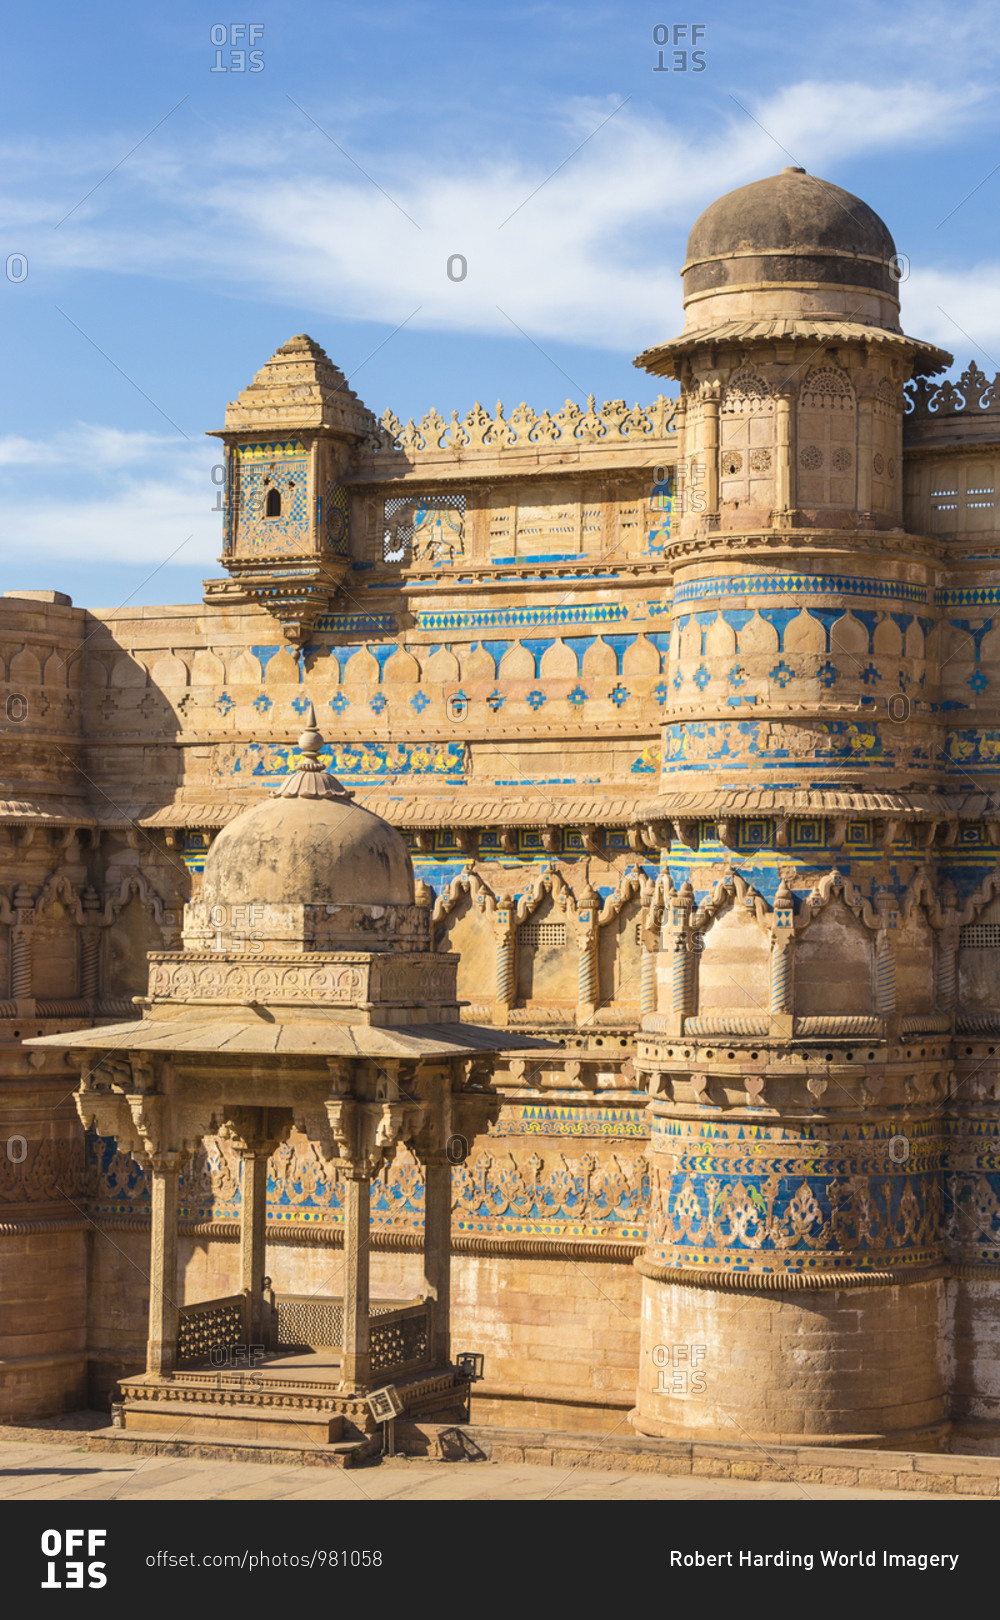 Man Singh Palace, Gwalior Fort, Gwalior, Madhya Pradesh, India, Asia